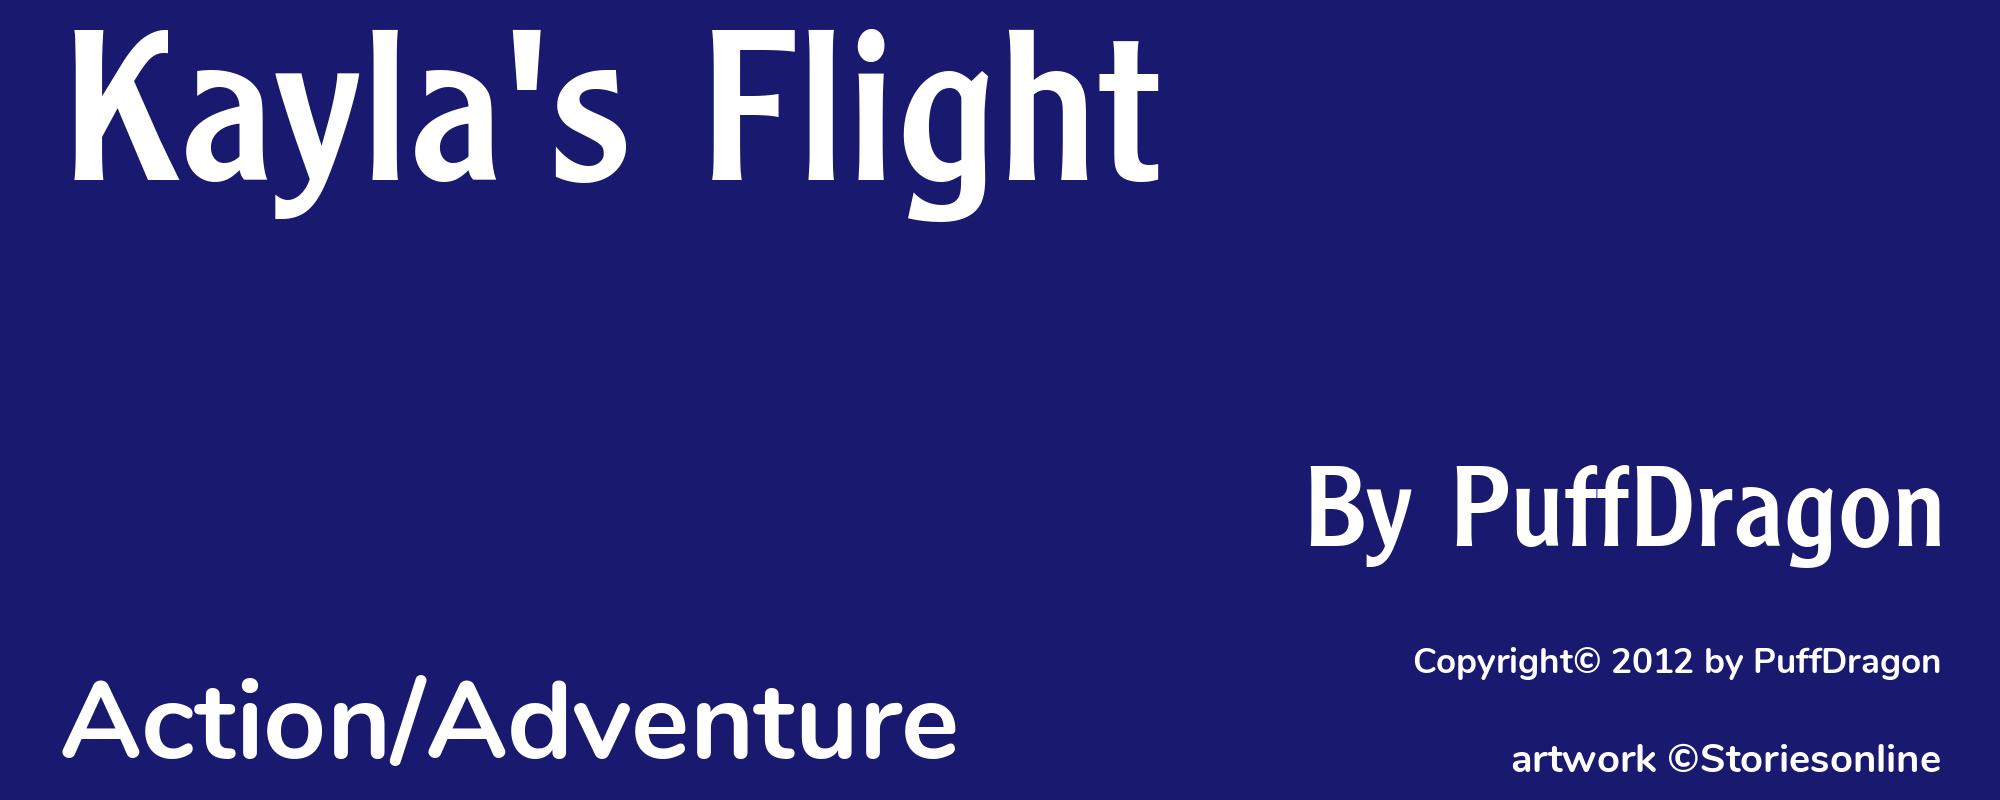 Kayla's Flight - Cover